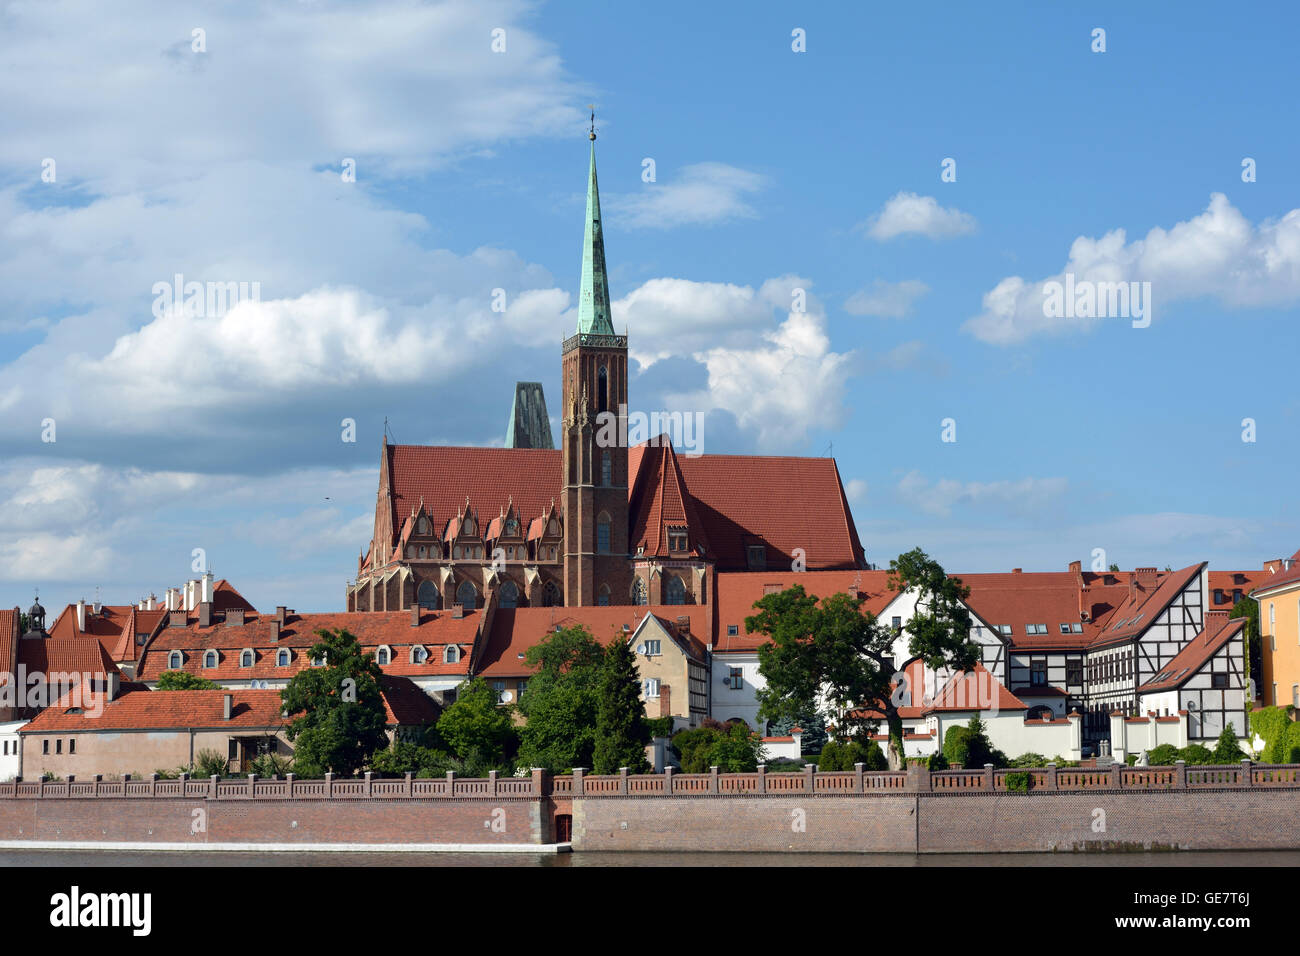 Vue sur le fleuve Oder à l'île de la Cathédrale avec la Sainte Vierge Marie de Wroclaw - Pologne. Banque D'Images